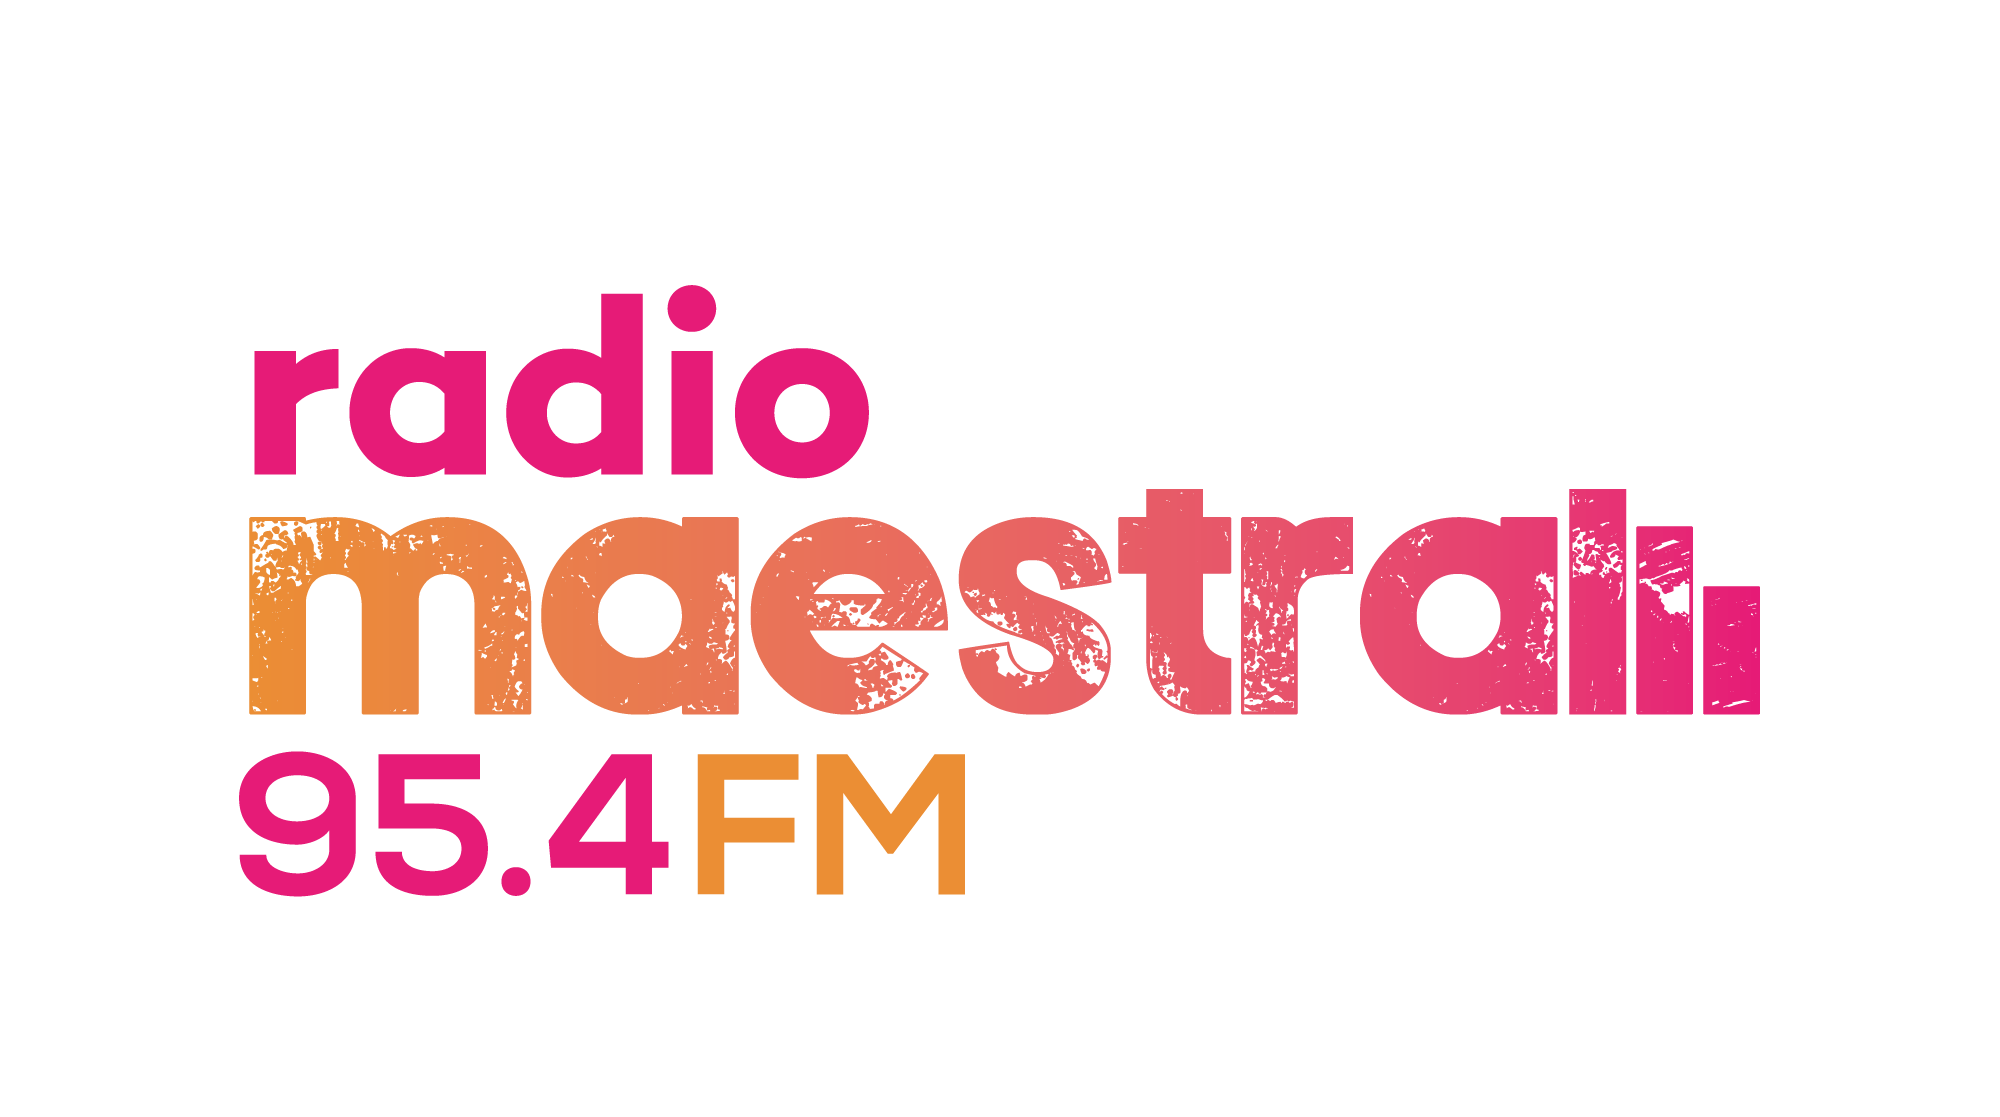 Radio Maestral final logo novo 2019 01